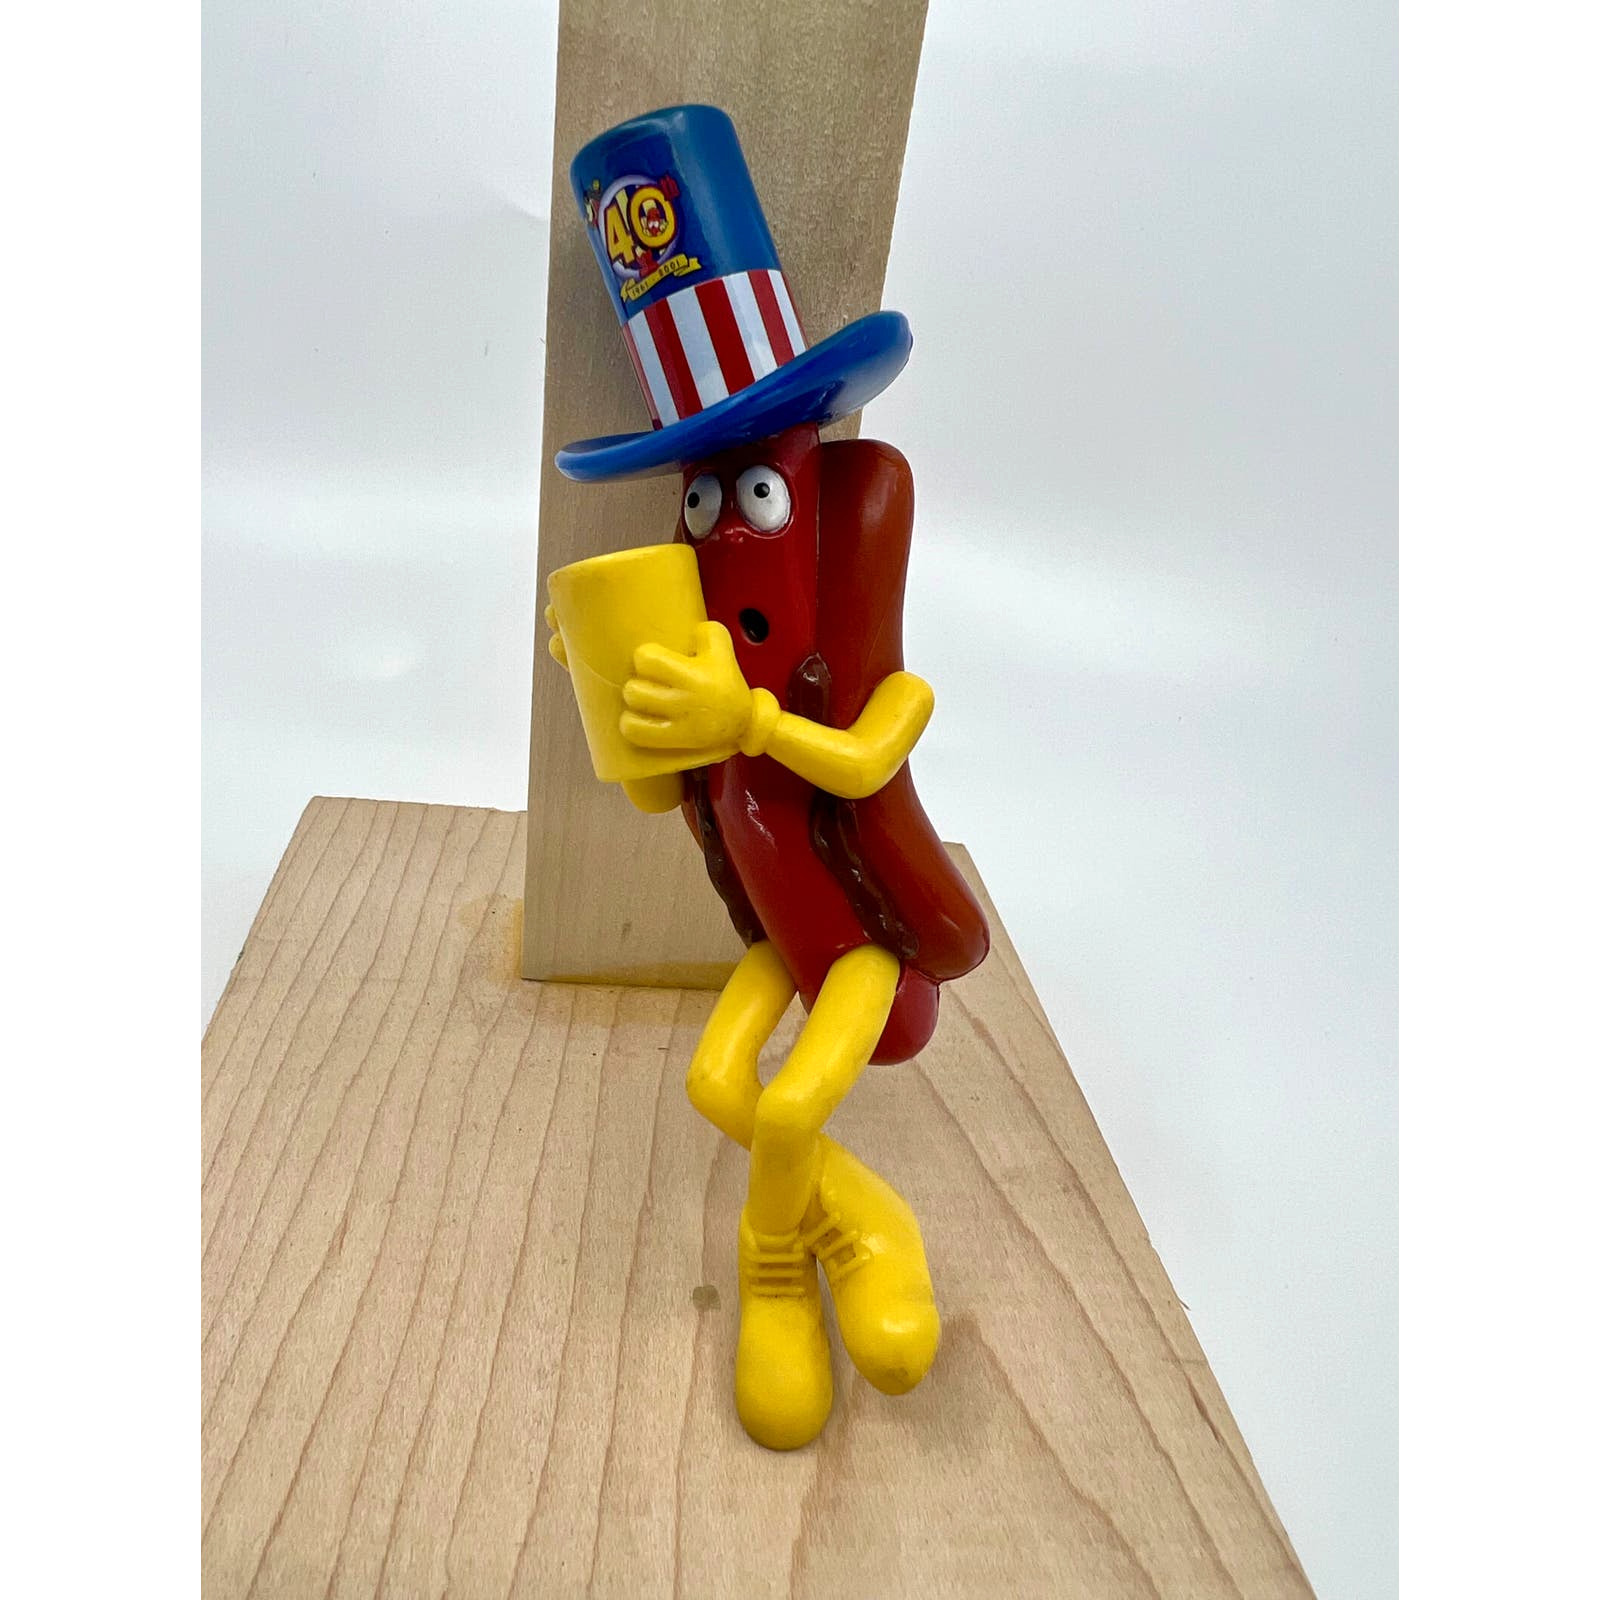 Vintage 2001 Wienerschnitzel 40th Anniversary Hot Dog Antenna Topper Figure